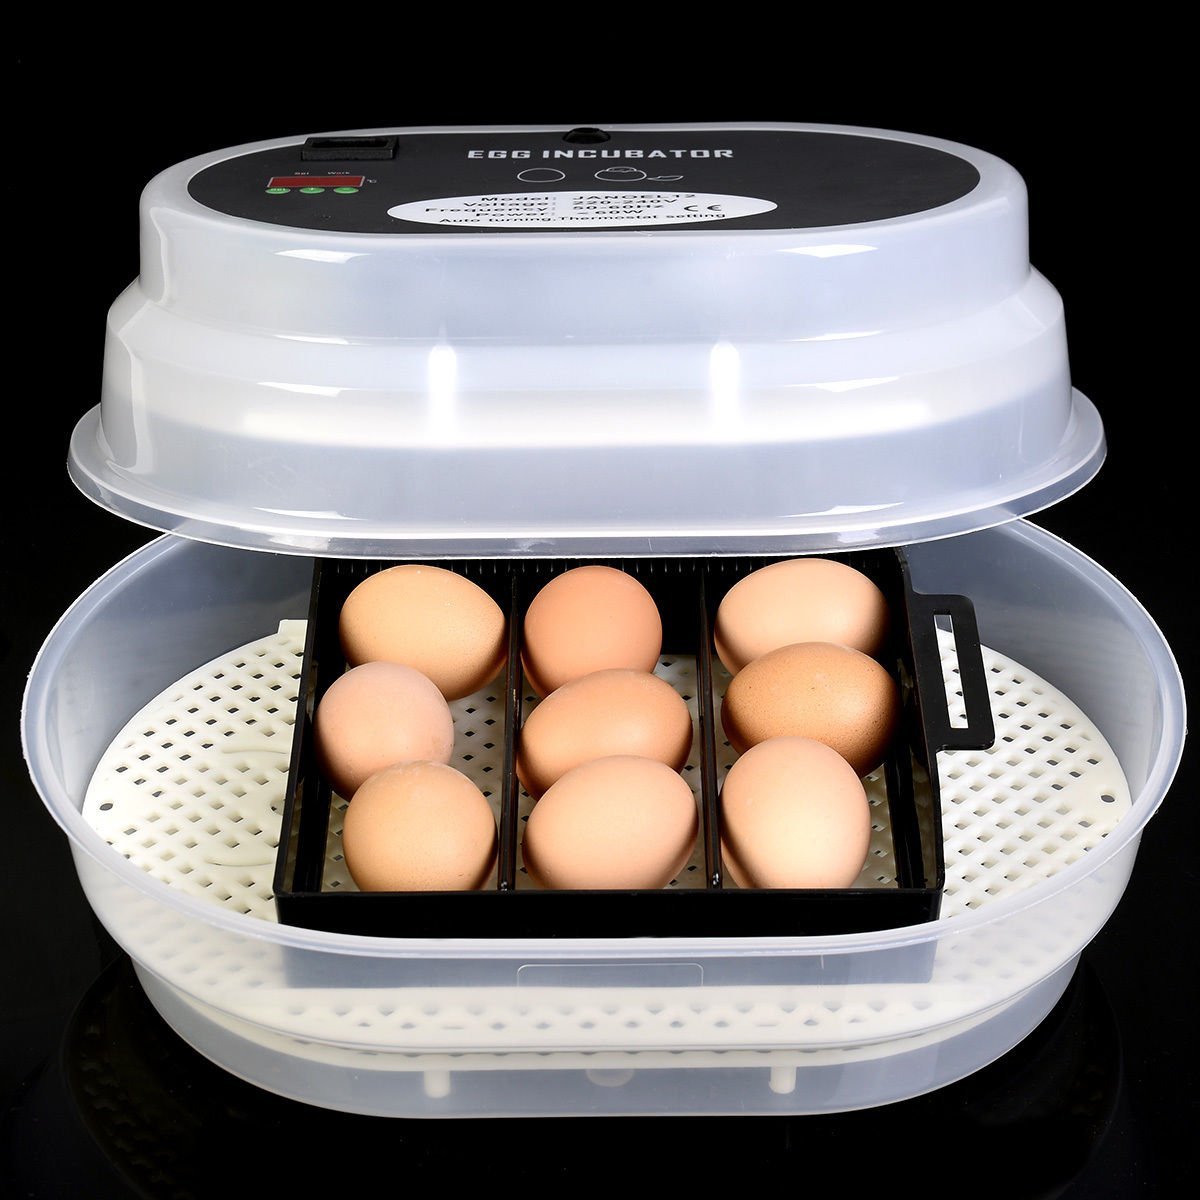 Мини инкубатор купить. Инкубатор 12 Egg incubator. Инкубатор Egg incubator. Mini Egg incubator на 12 яиц. Инкубаторы на 10 яиц автоматические.